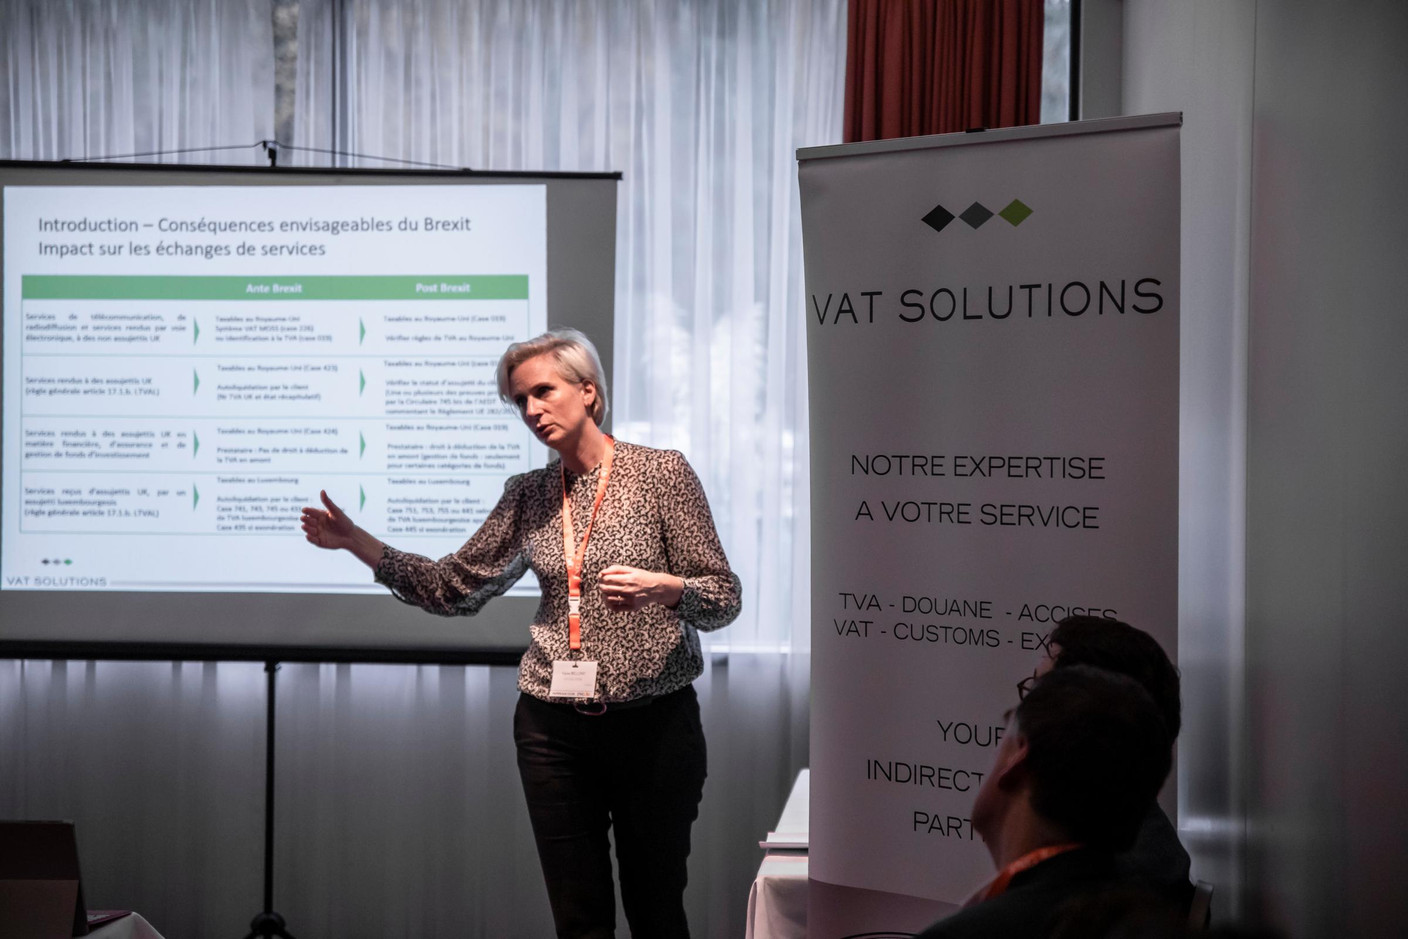 Karine Bellony (VAT Solutions) (Photo: Jan Hanrion/Maison Moderne)